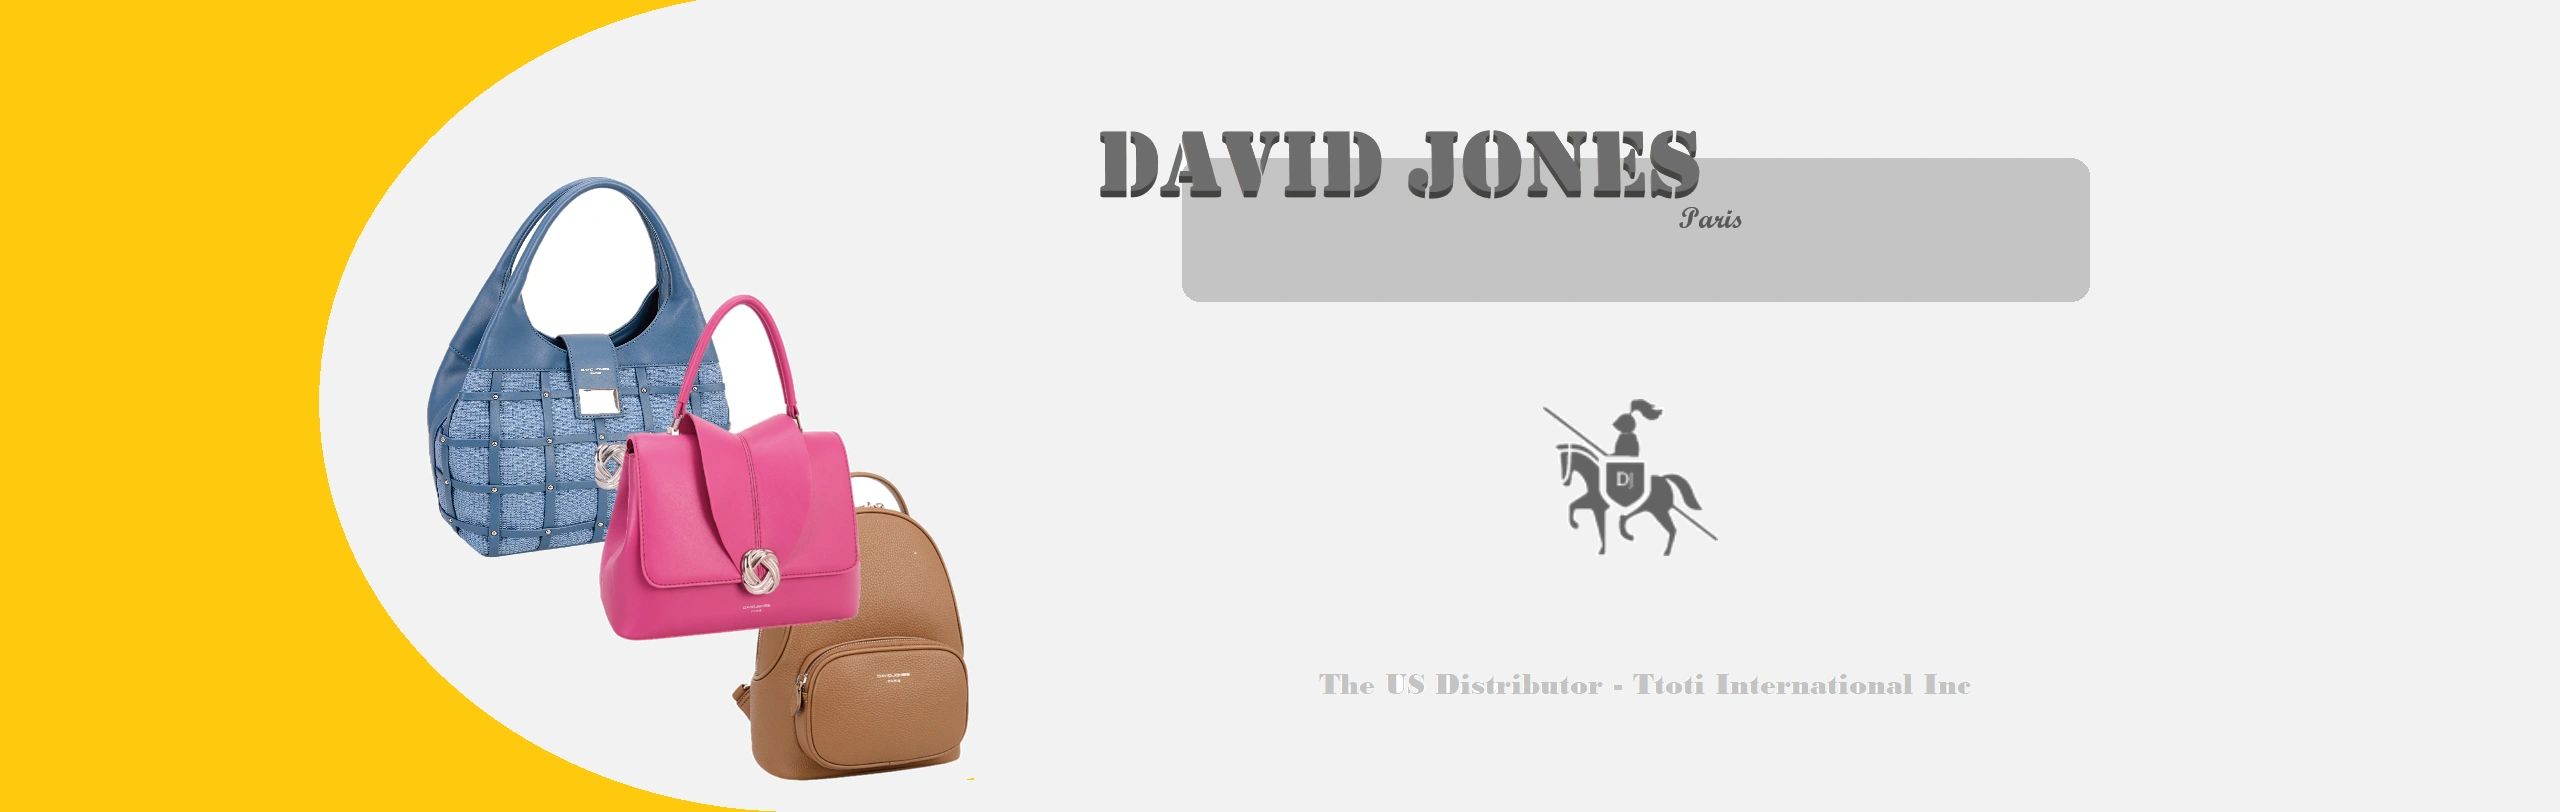 david jones paris, Bags, Copy David Jones Paris Purse